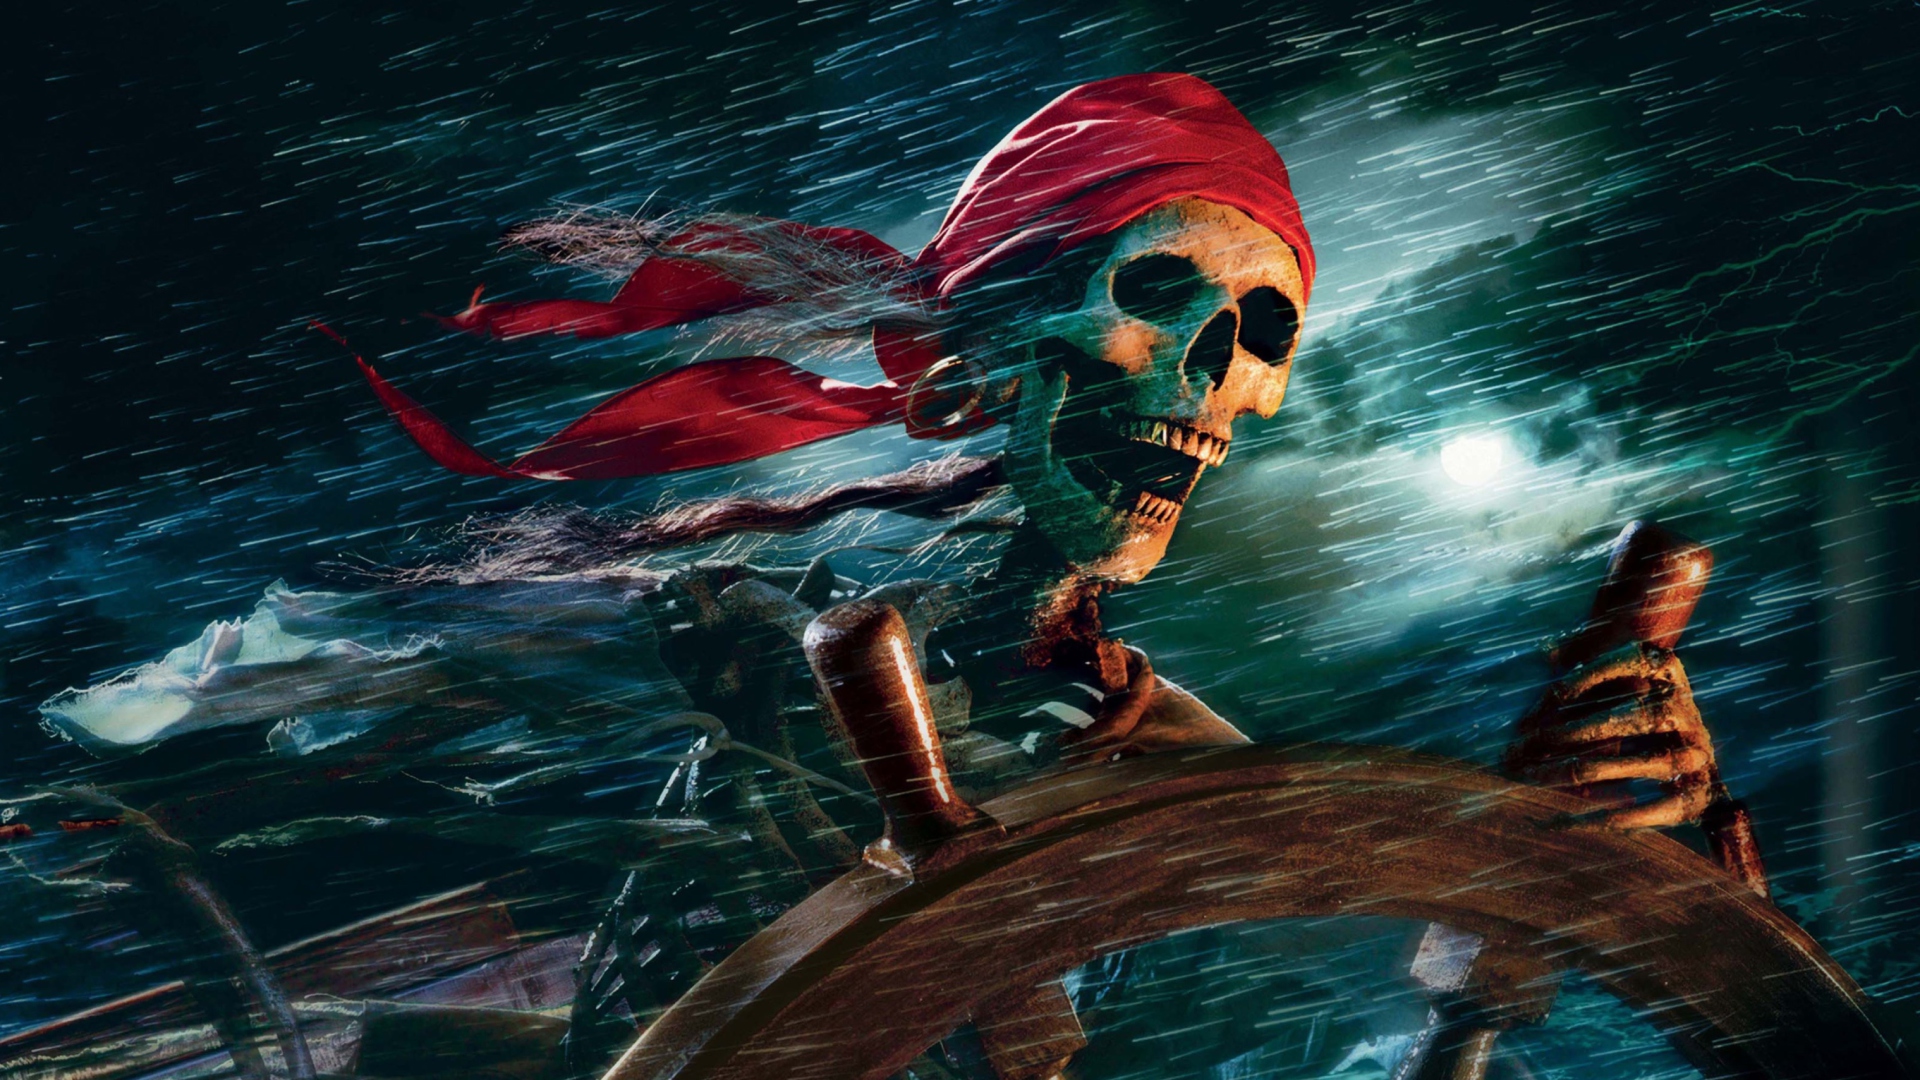 Das Sea Pirate Skull Wallpaper 1920x1080